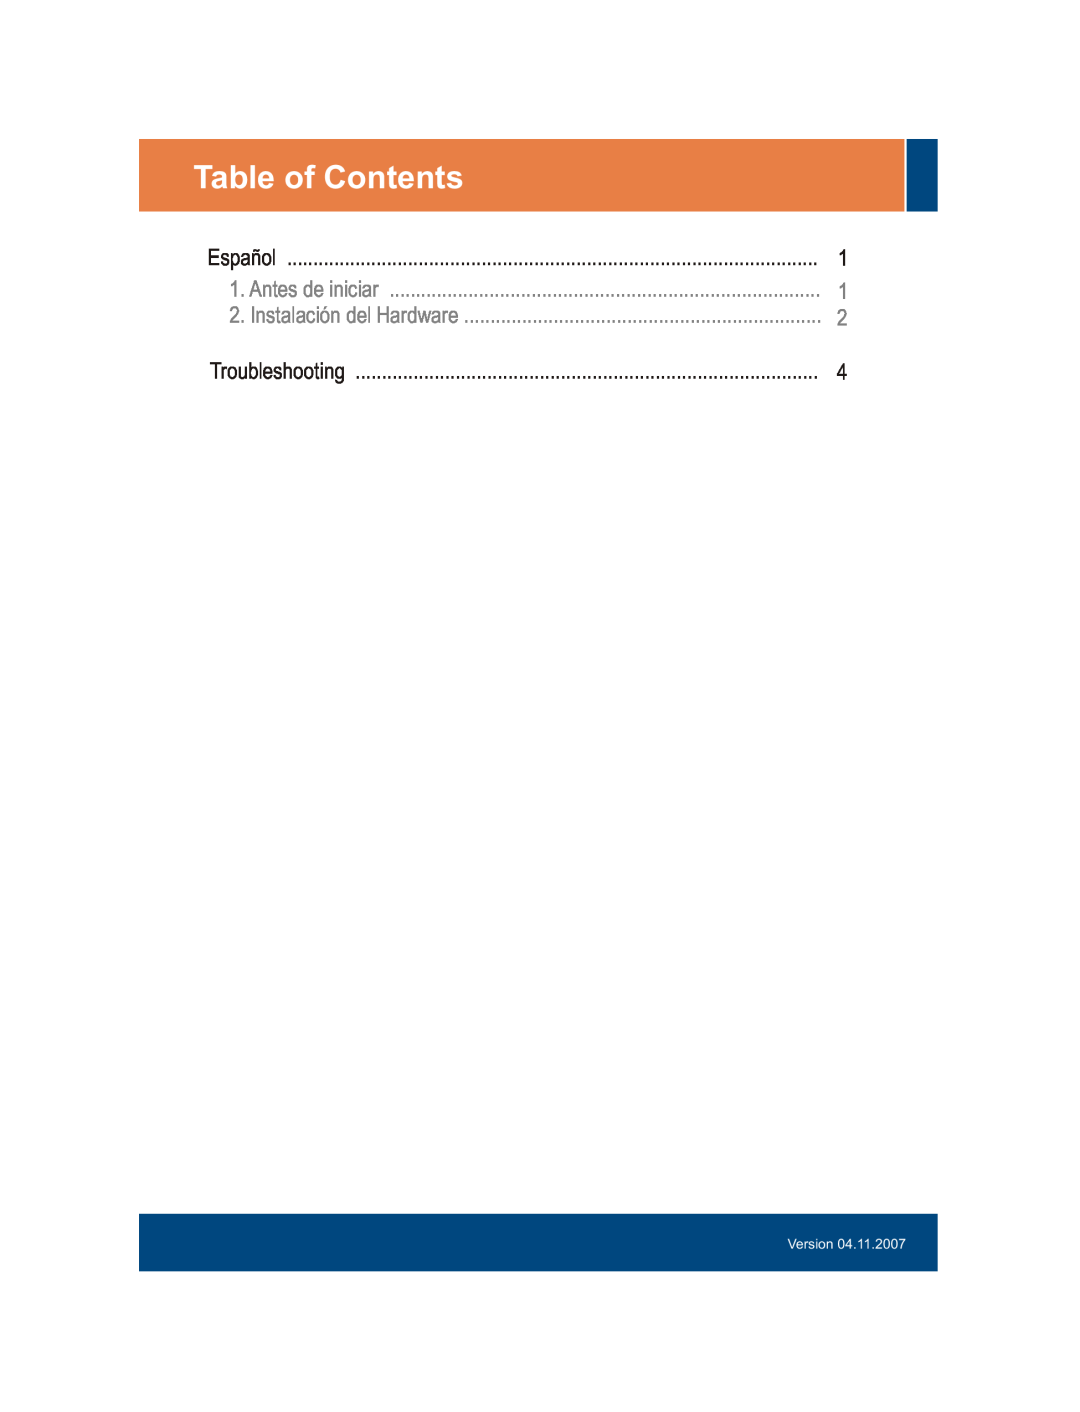 TRENDnet TFU-430 manual Table of Contents, Español, Antes de iniciar, Instalación del Hardware, Troubleshooting, Version 